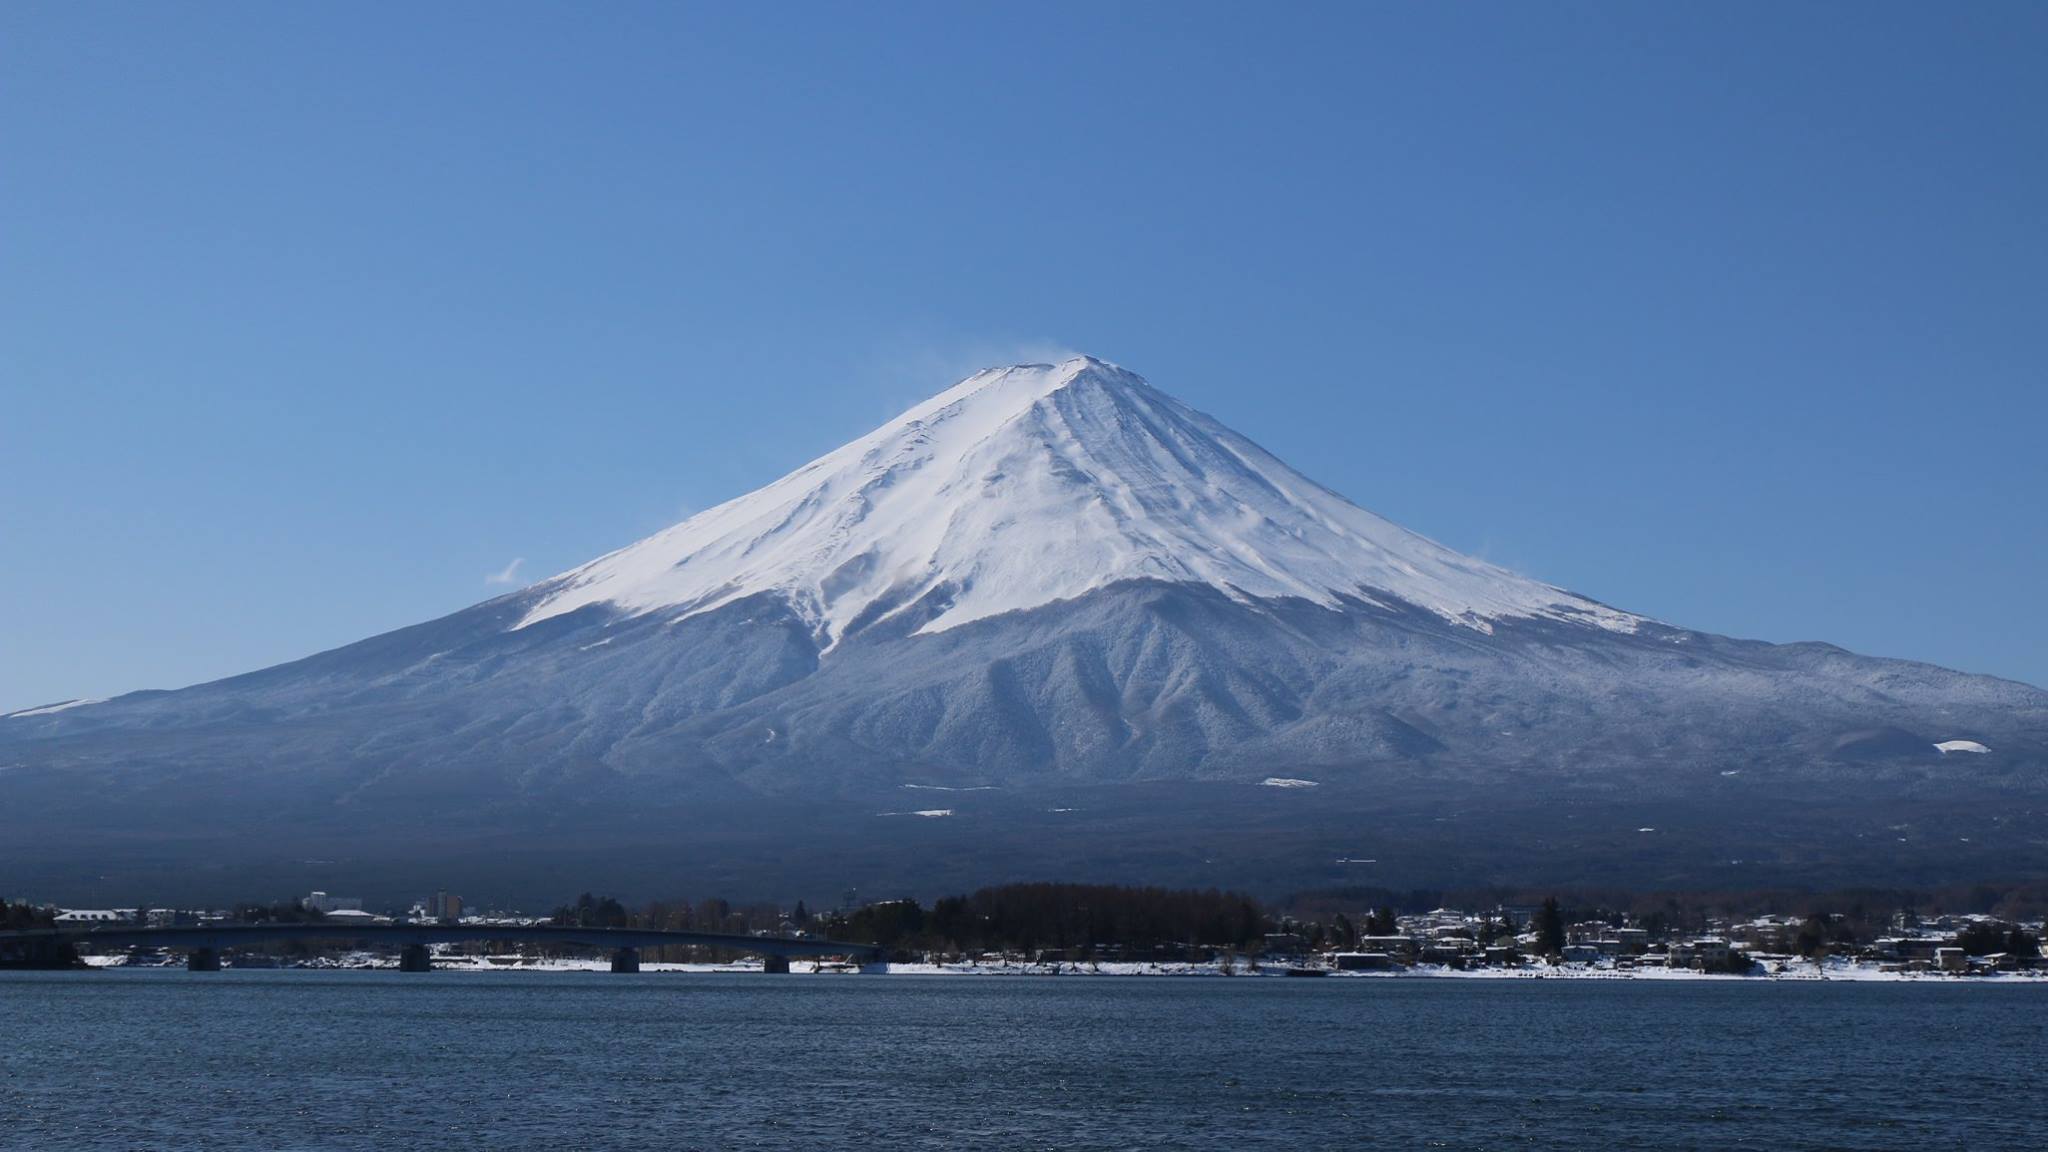 ふなっちゃん通信 Vol 7 富士山もいよいよ春本番 みんなの手で世界文化遺産富士山を綺麗にしよう 富士山クリーンプロジェクト Since 06